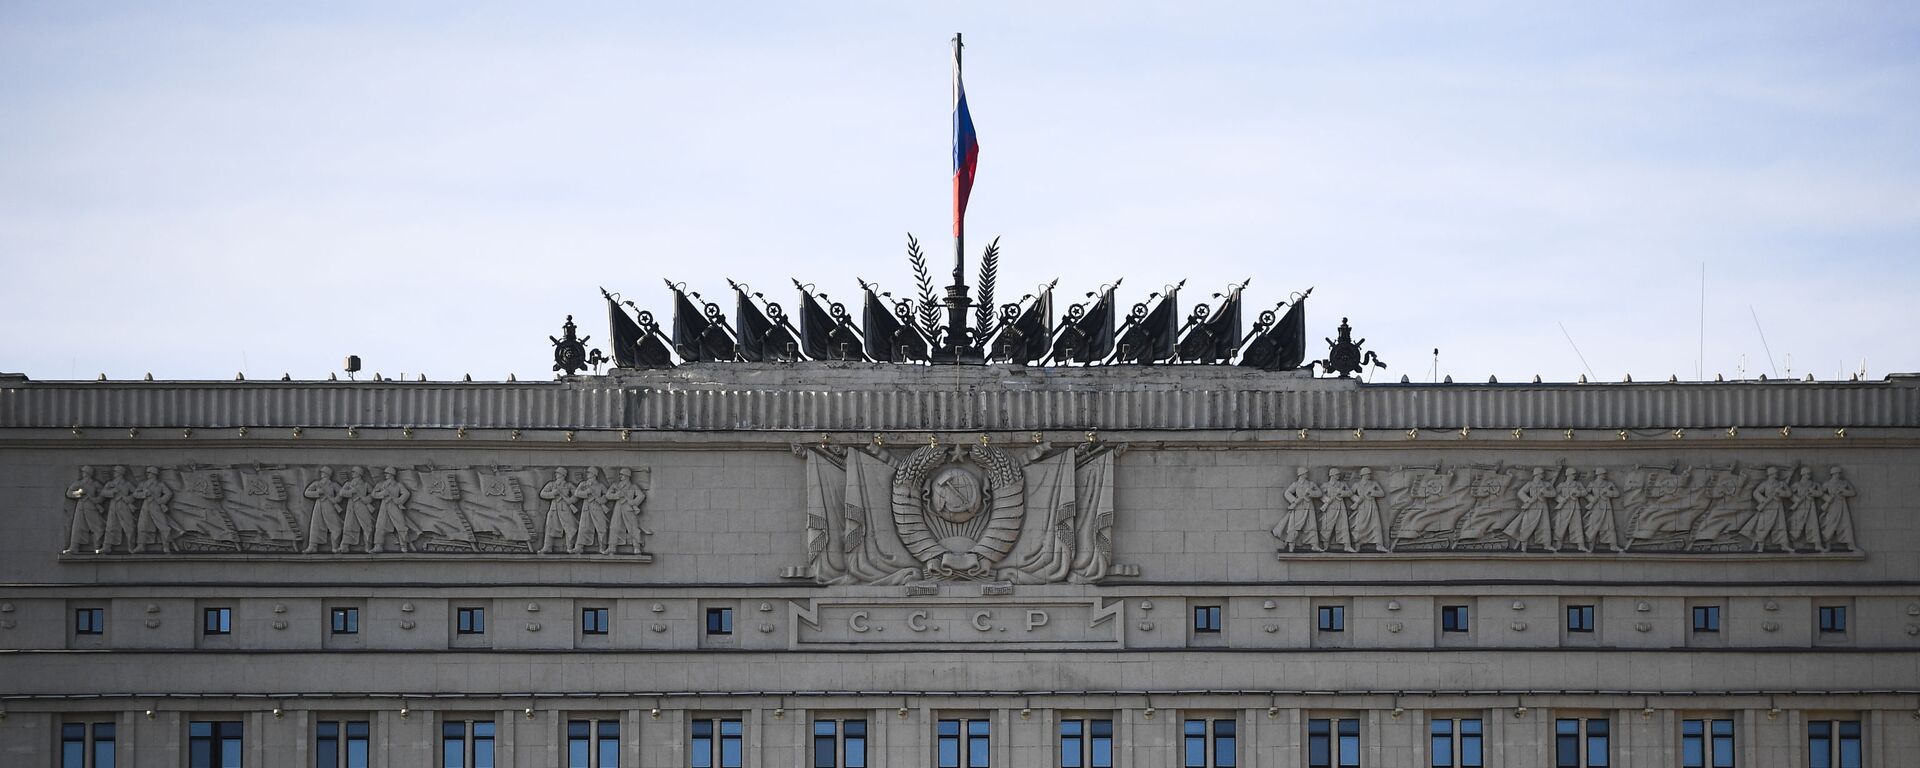 Tòa nhà của Bộ Quốc phòng Liên bang Nga trên bờ kè Frunze ở Moscow - Sputnik Việt Nam, 1920, 16.11.2021